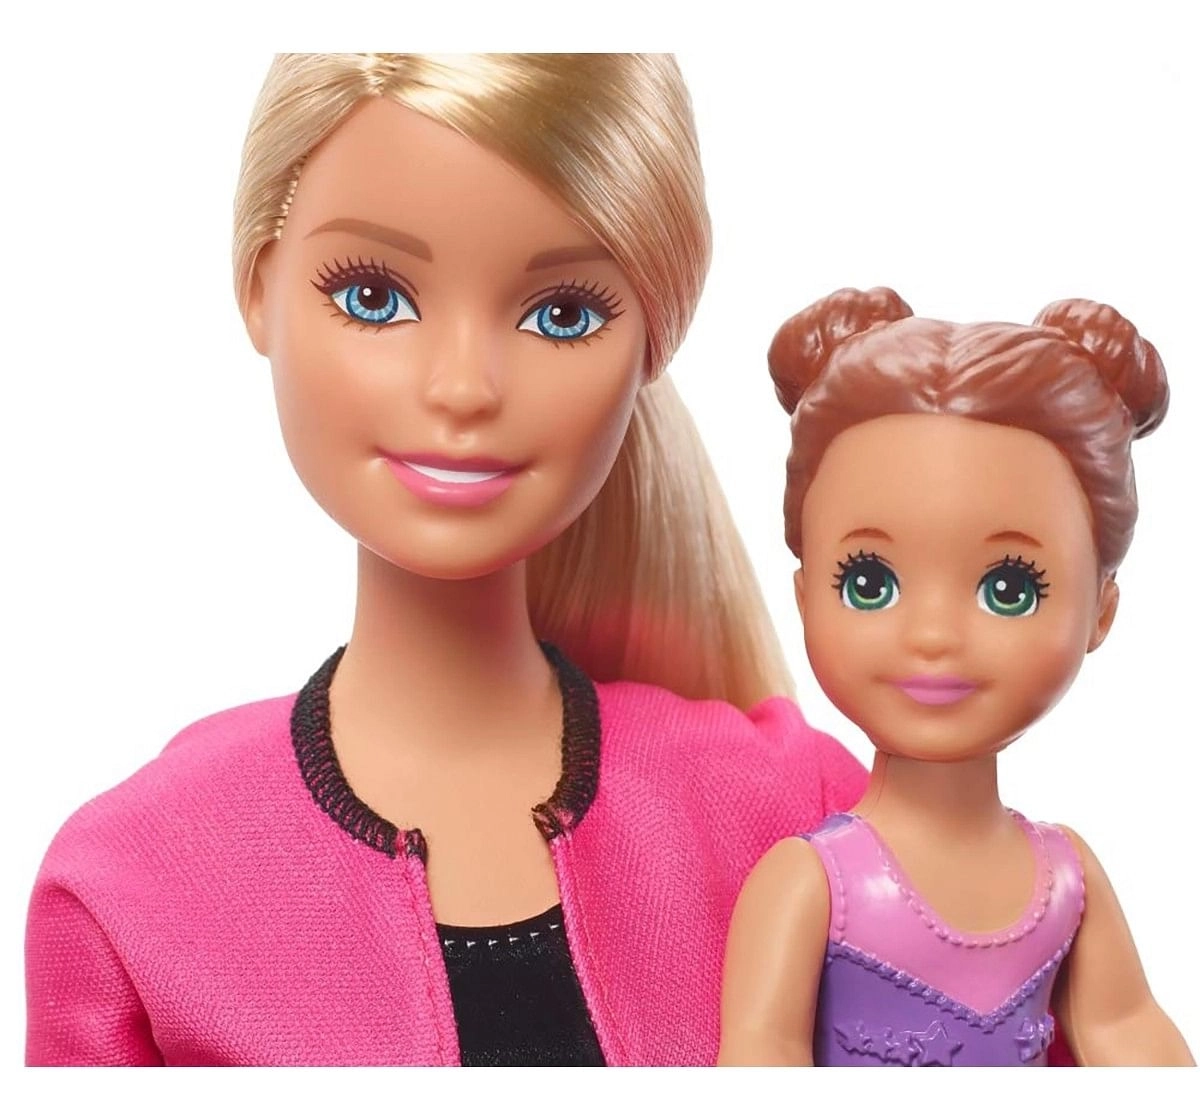 Barbie Gymnastics Coach Doll Playsets Dolls & Accessories for age 3Y+ 